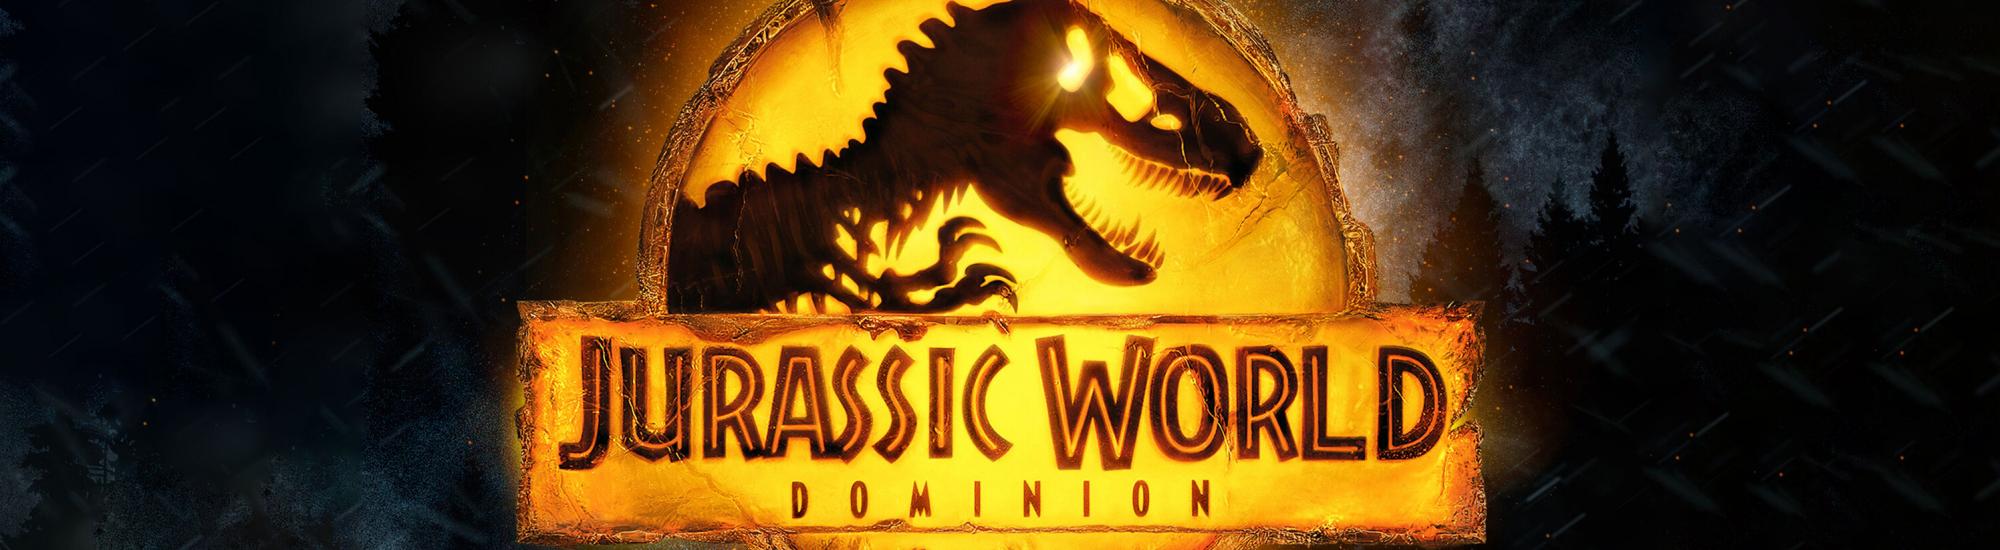 Jurassic World Dominion movie banner